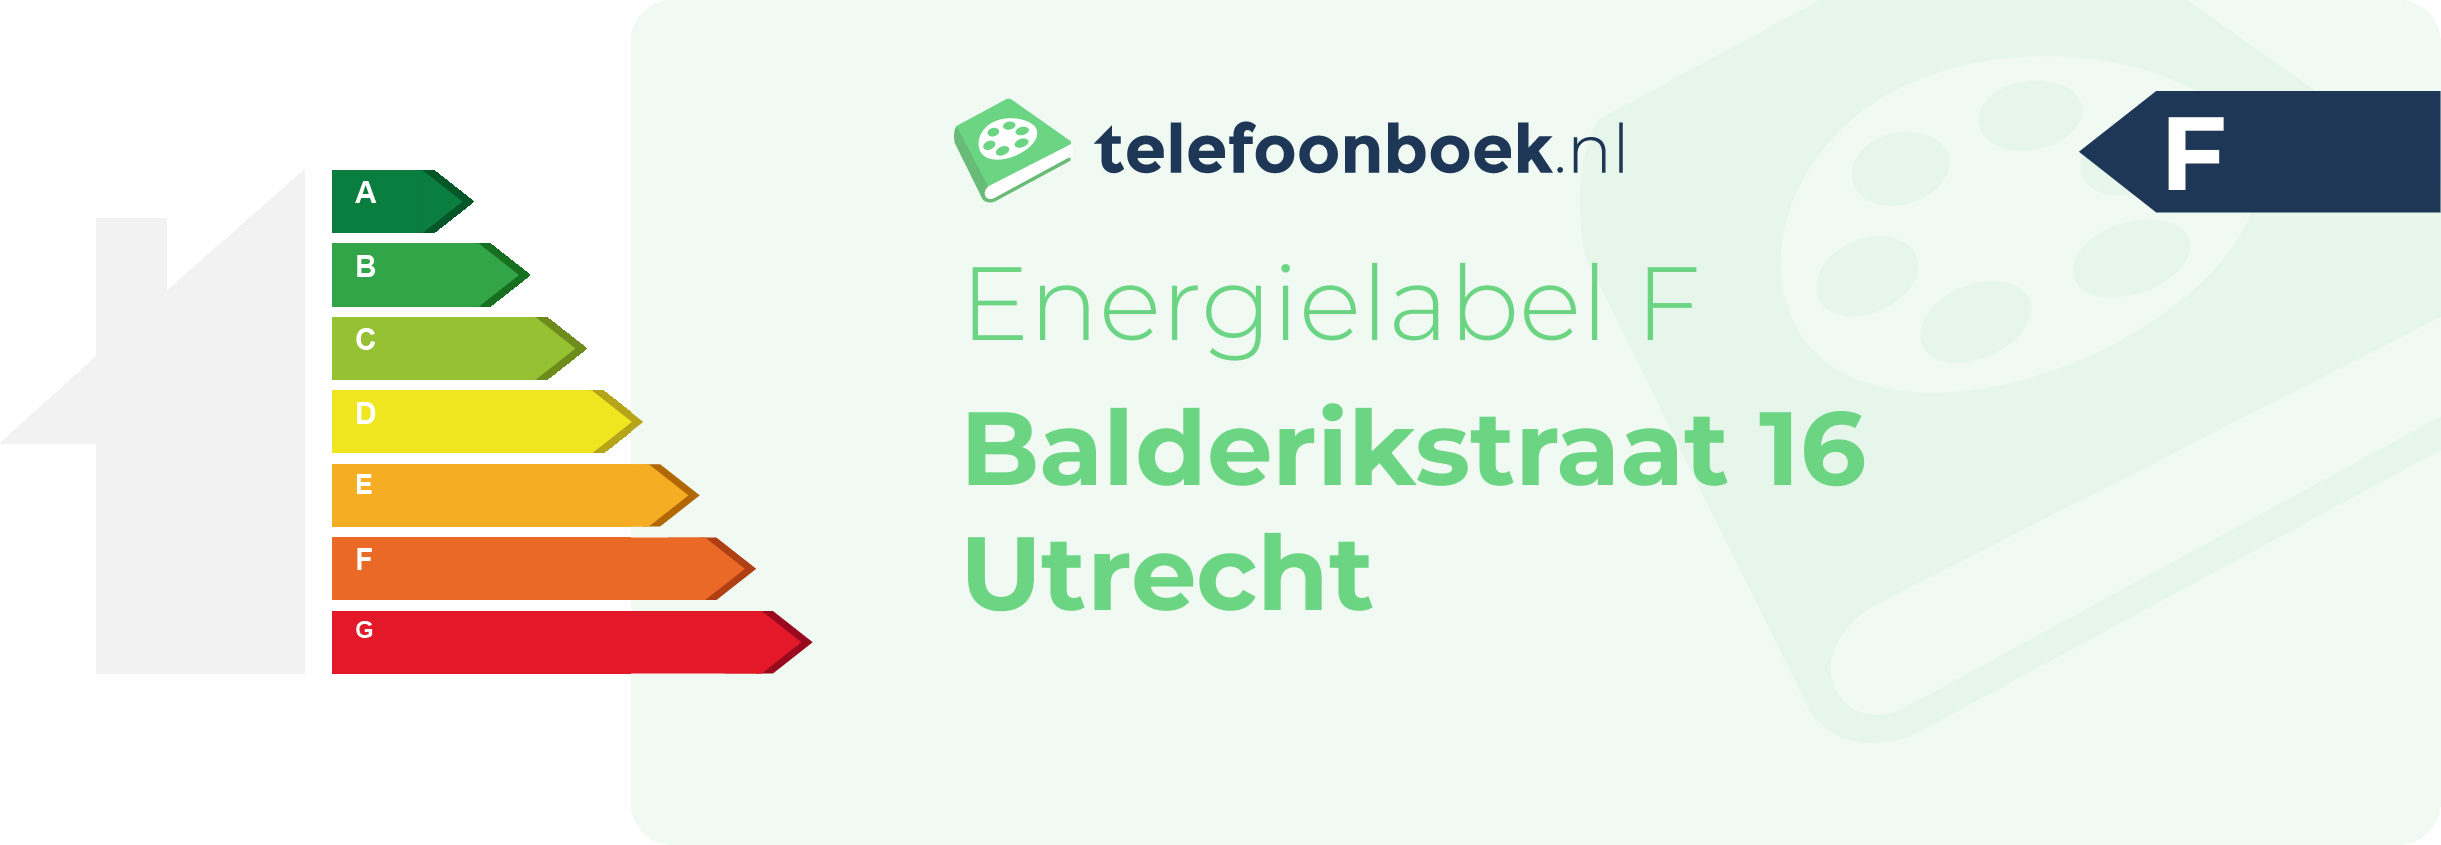 Energielabel Balderikstraat 16 Utrecht